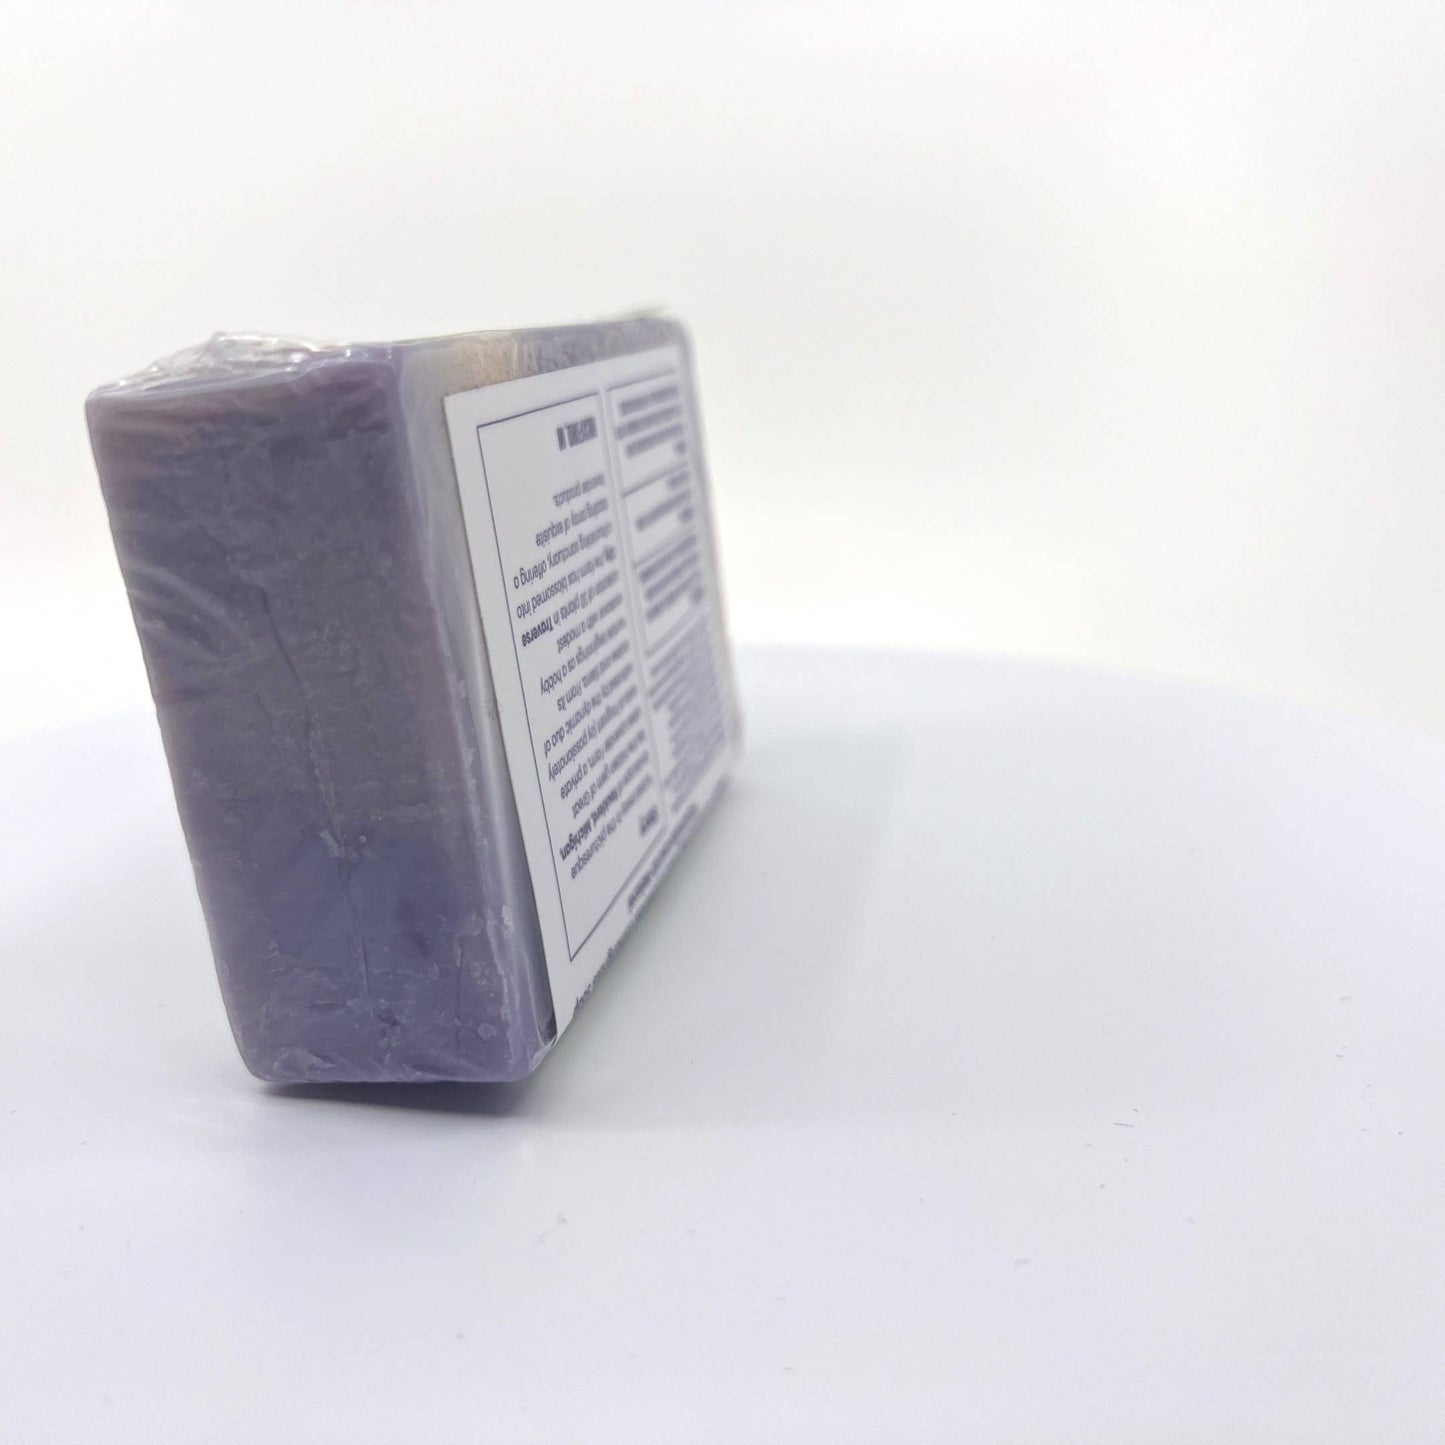 Lavender Lemongrass Soap Bar - Handmade Cold Process - 5 oz